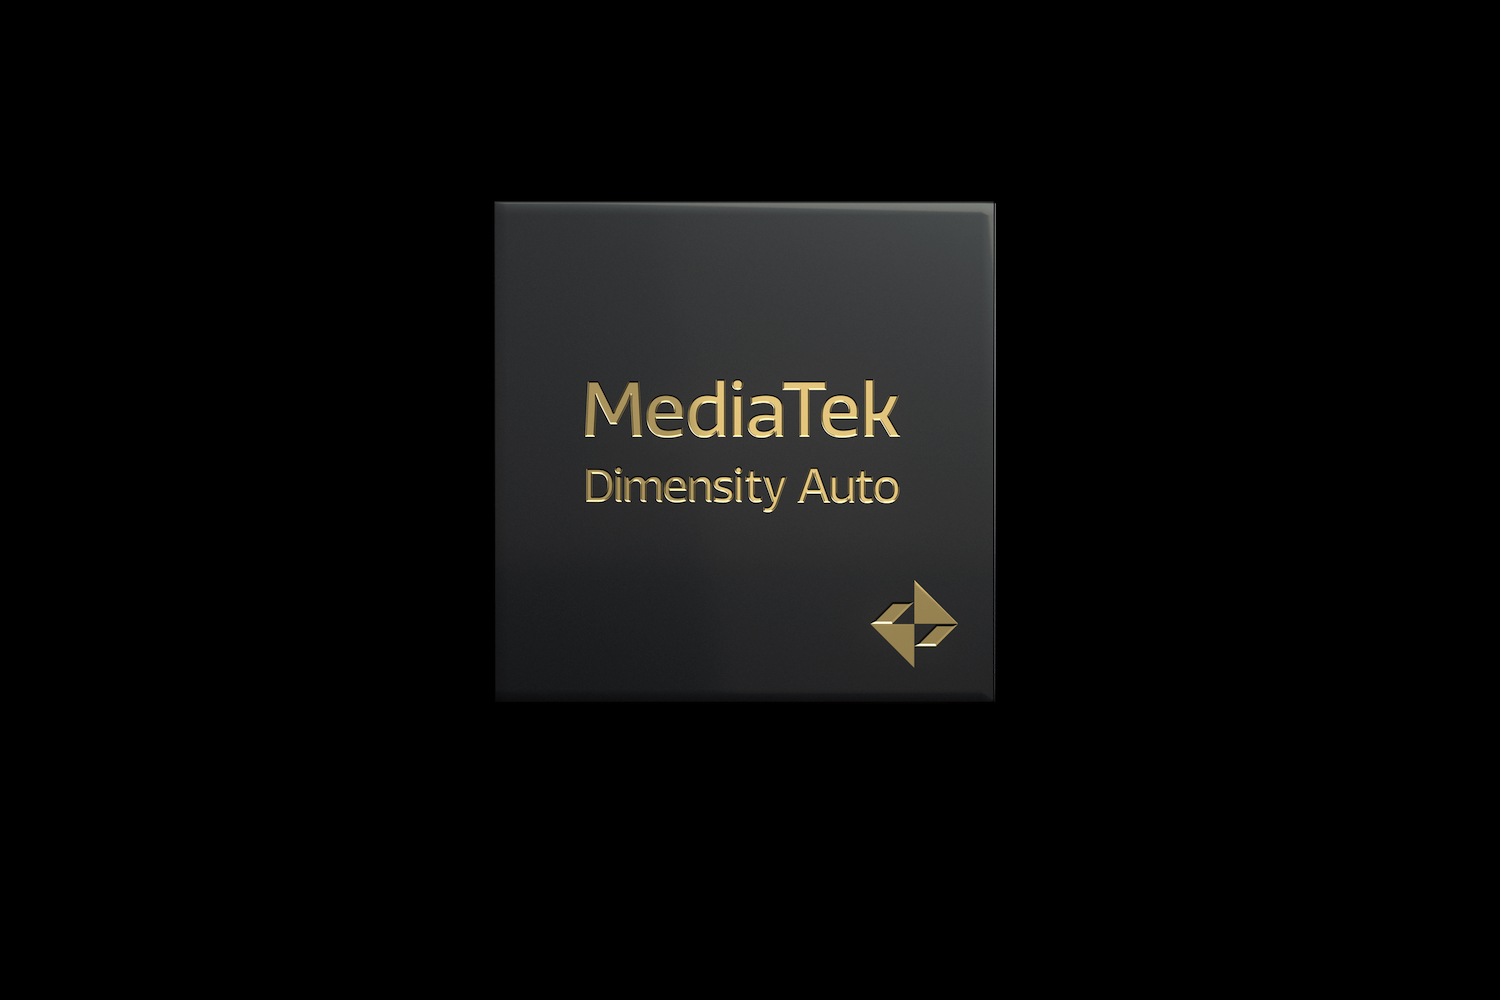 Uma maquete do chipset MediaTek Dimensity Auto.